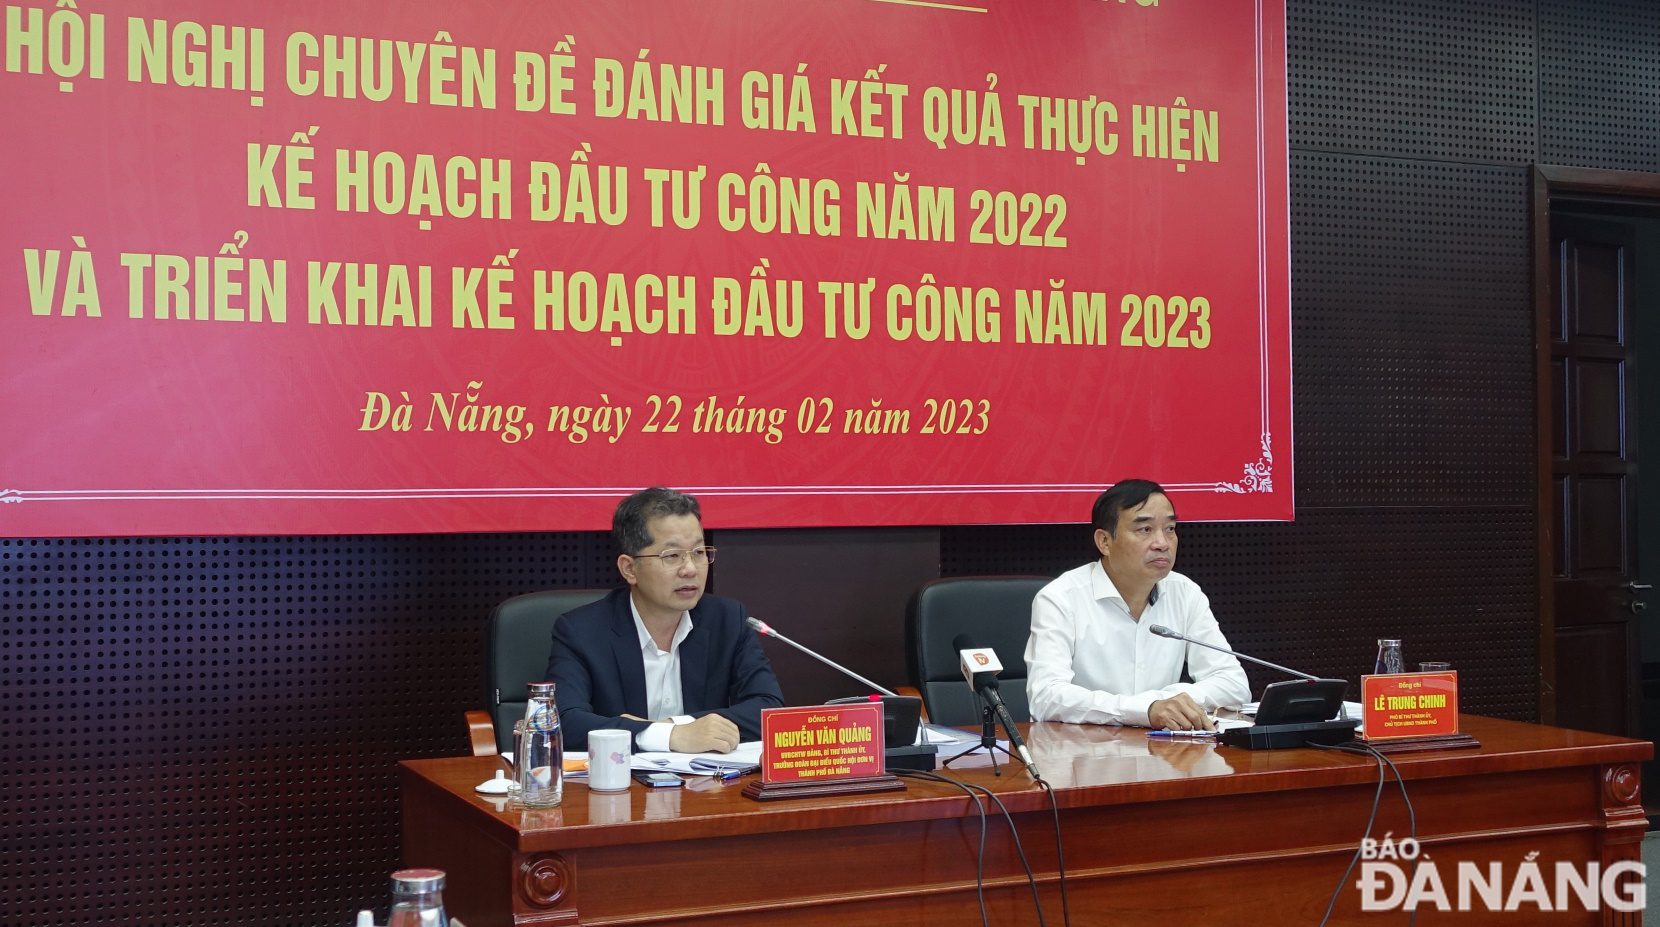 Bí thư Thành ủy Đà Nẵng Nguyễn Văn Quảng và Chủ tịch UBND thành phố Lê Trung Chinh đồng chủ trì hội nghị chuyên đề đánh giá kết quả thực hiện kế hoạch đầu tư công năm 2022 và triển khai kế hoạch đầu tư công năm 2023. Ảnh: HOÀNG HIỆP